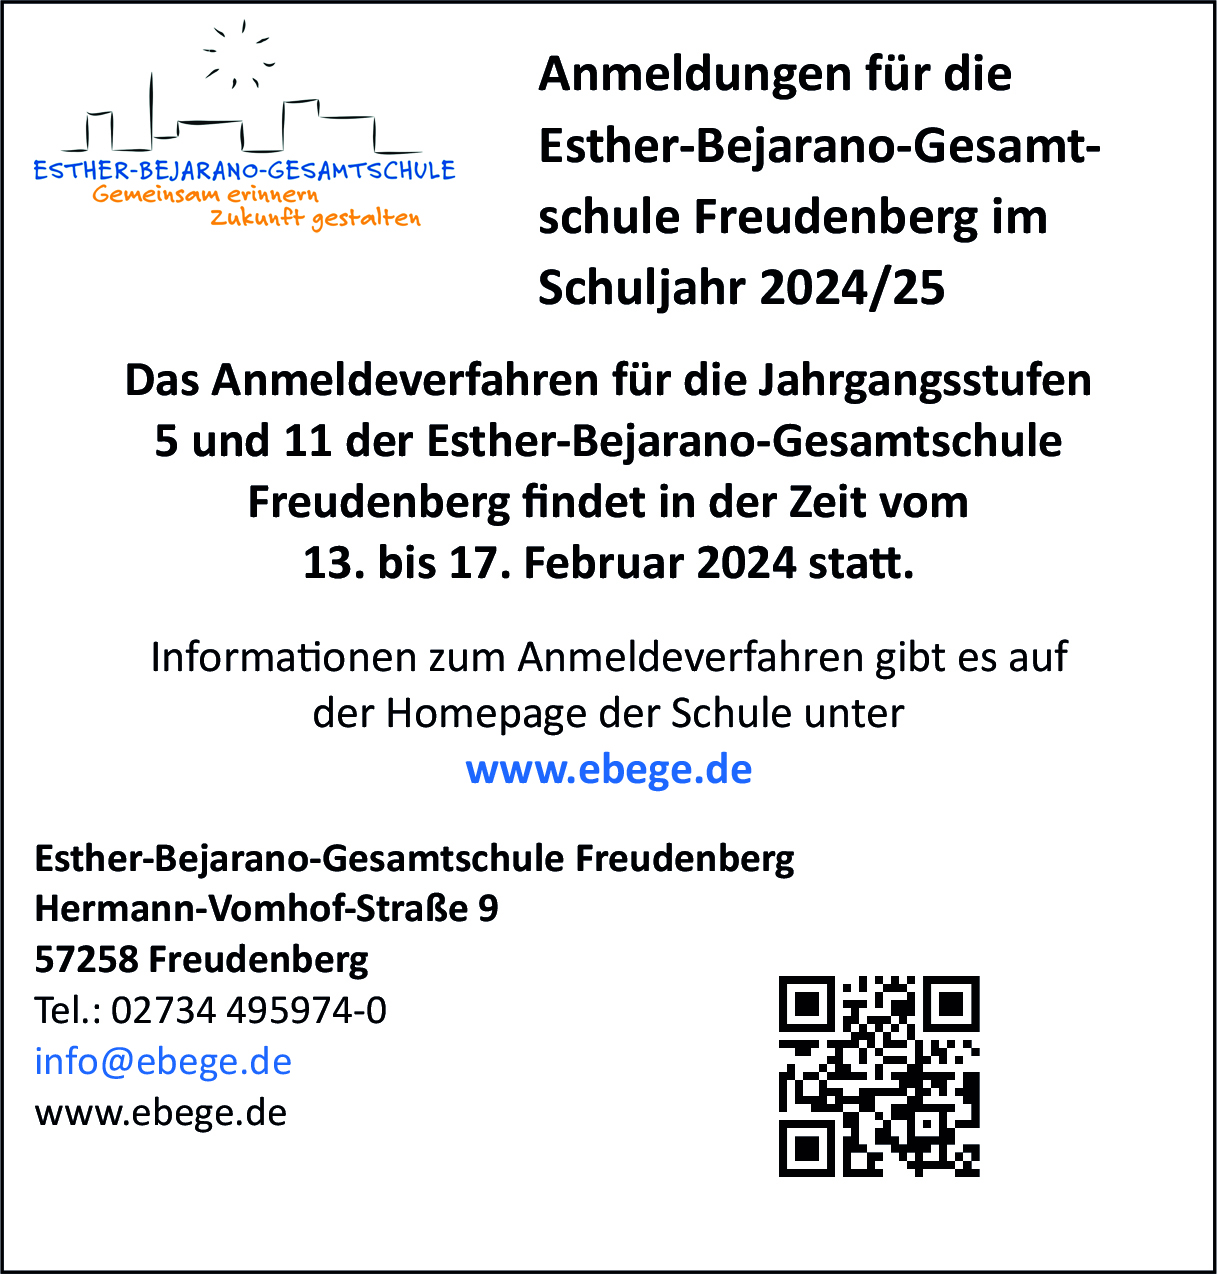 Anmeldungen für die Esther-Bejarano-Gesamtschule Freudenberg im Schuljahr 2024/25